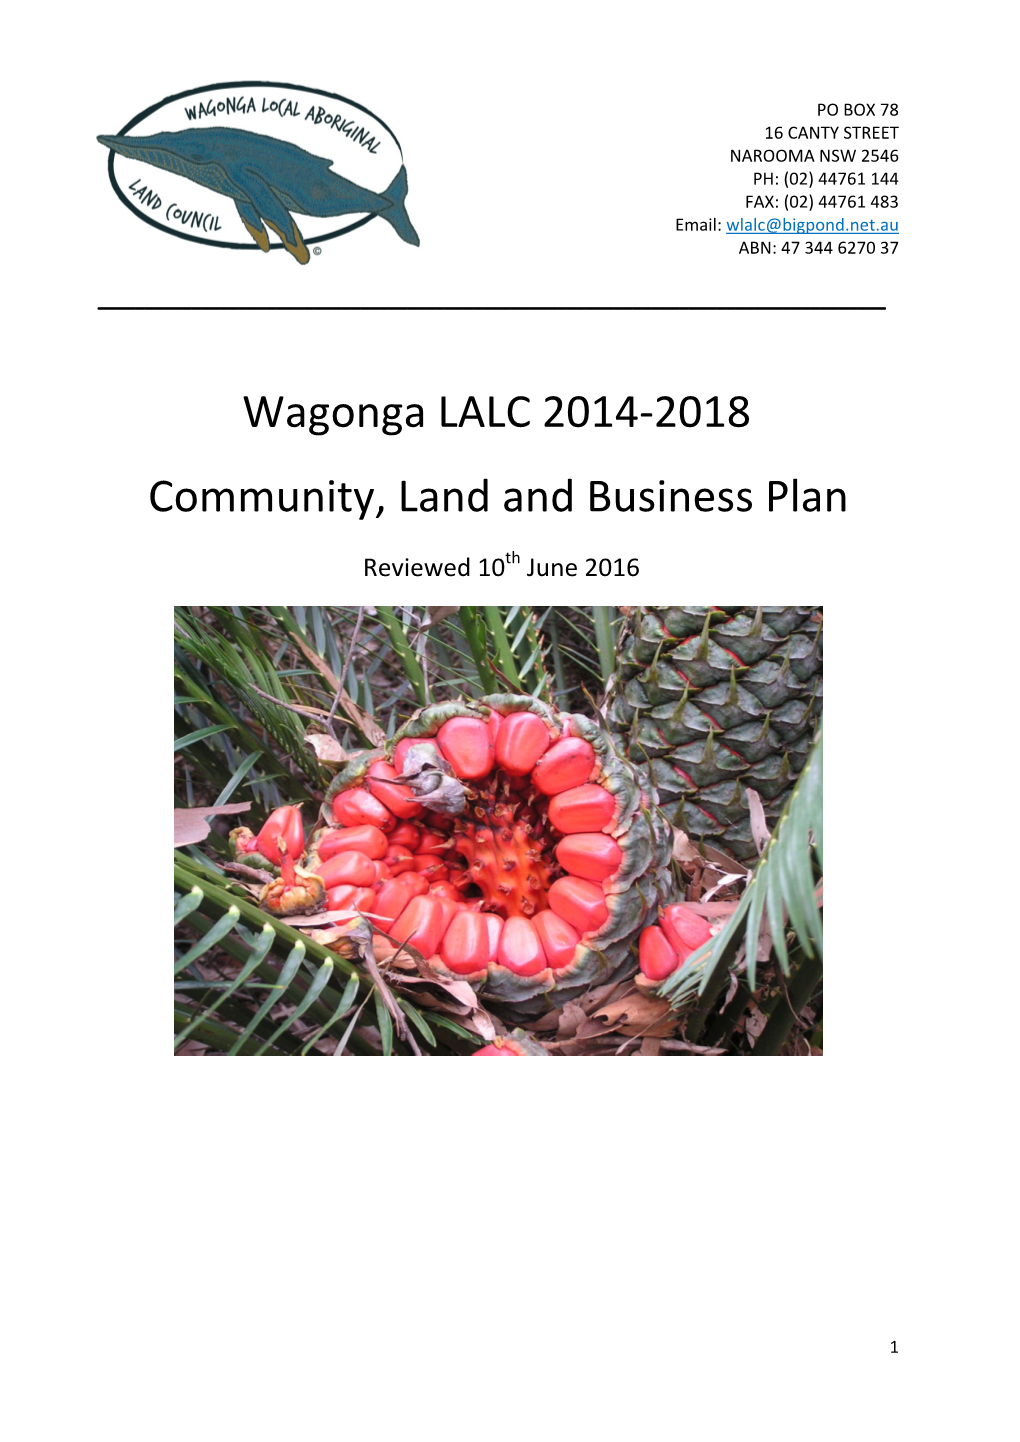 Wagonga LALC 2014-2018 Community, Land and Business Plan